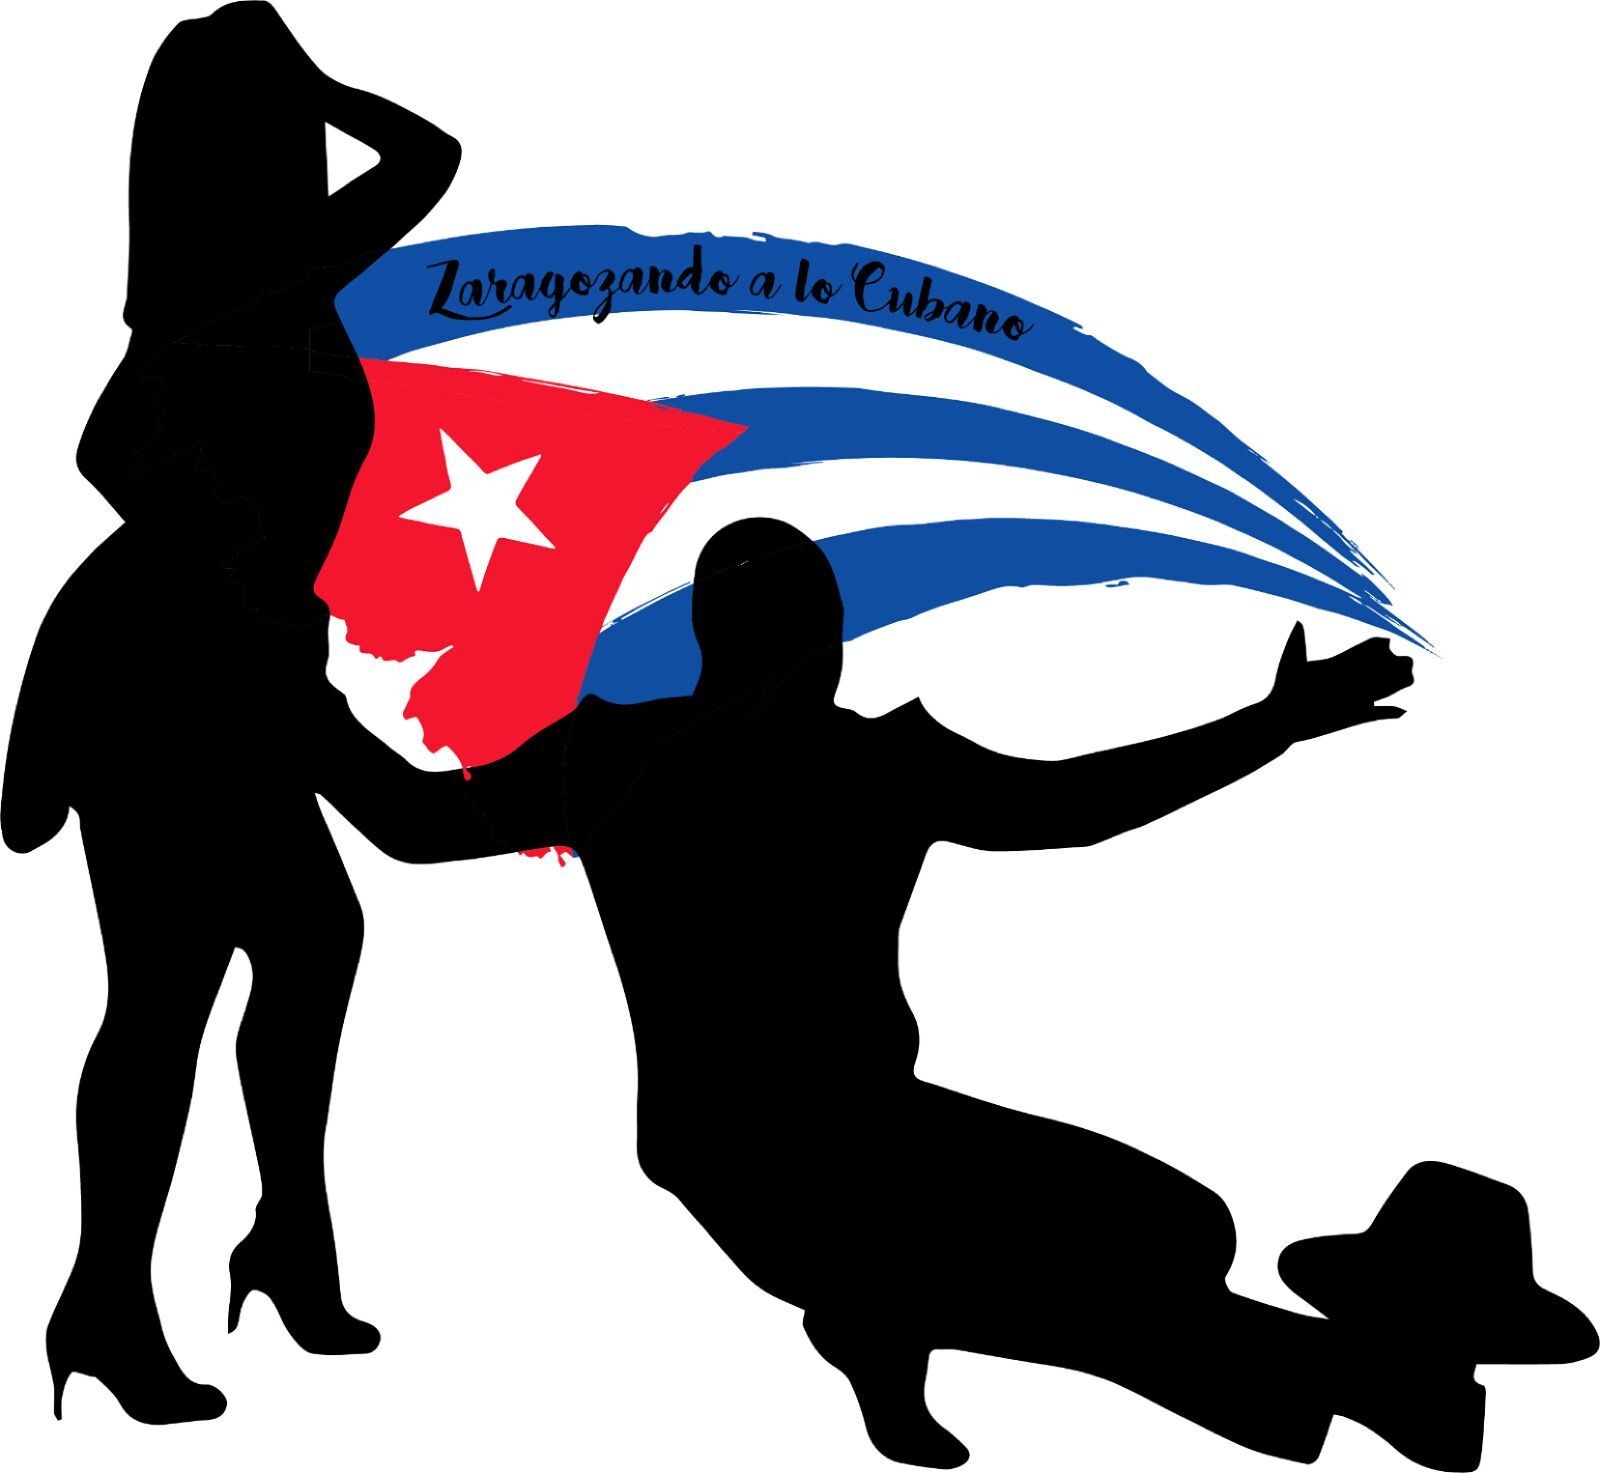 Zaragozando a lo cubano